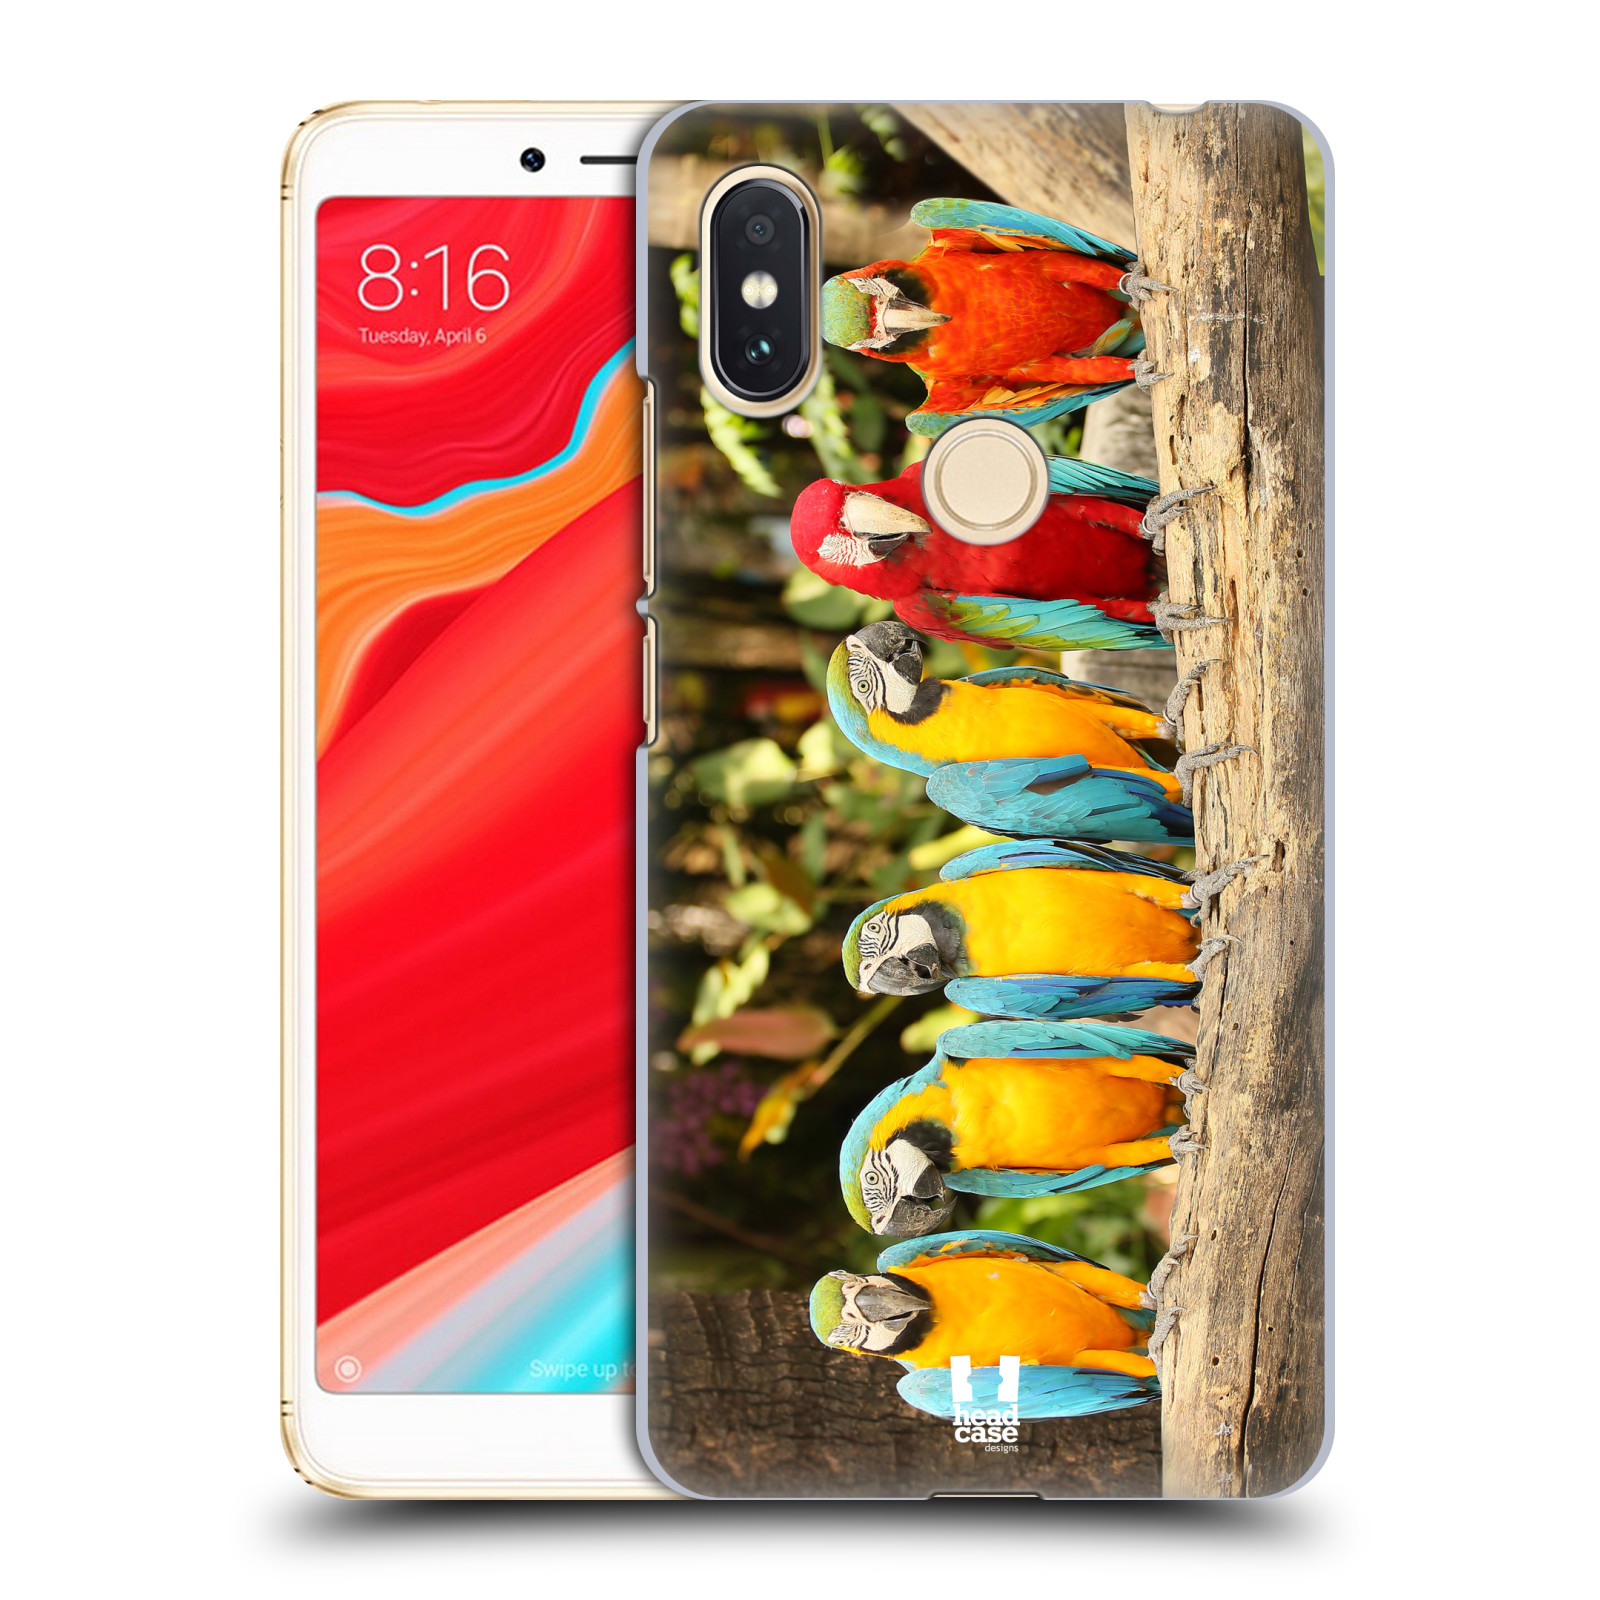 HEAD CASE plastový obal na mobil Xiaomi Redmi S2 vzor slavná zvířata foto papoušci